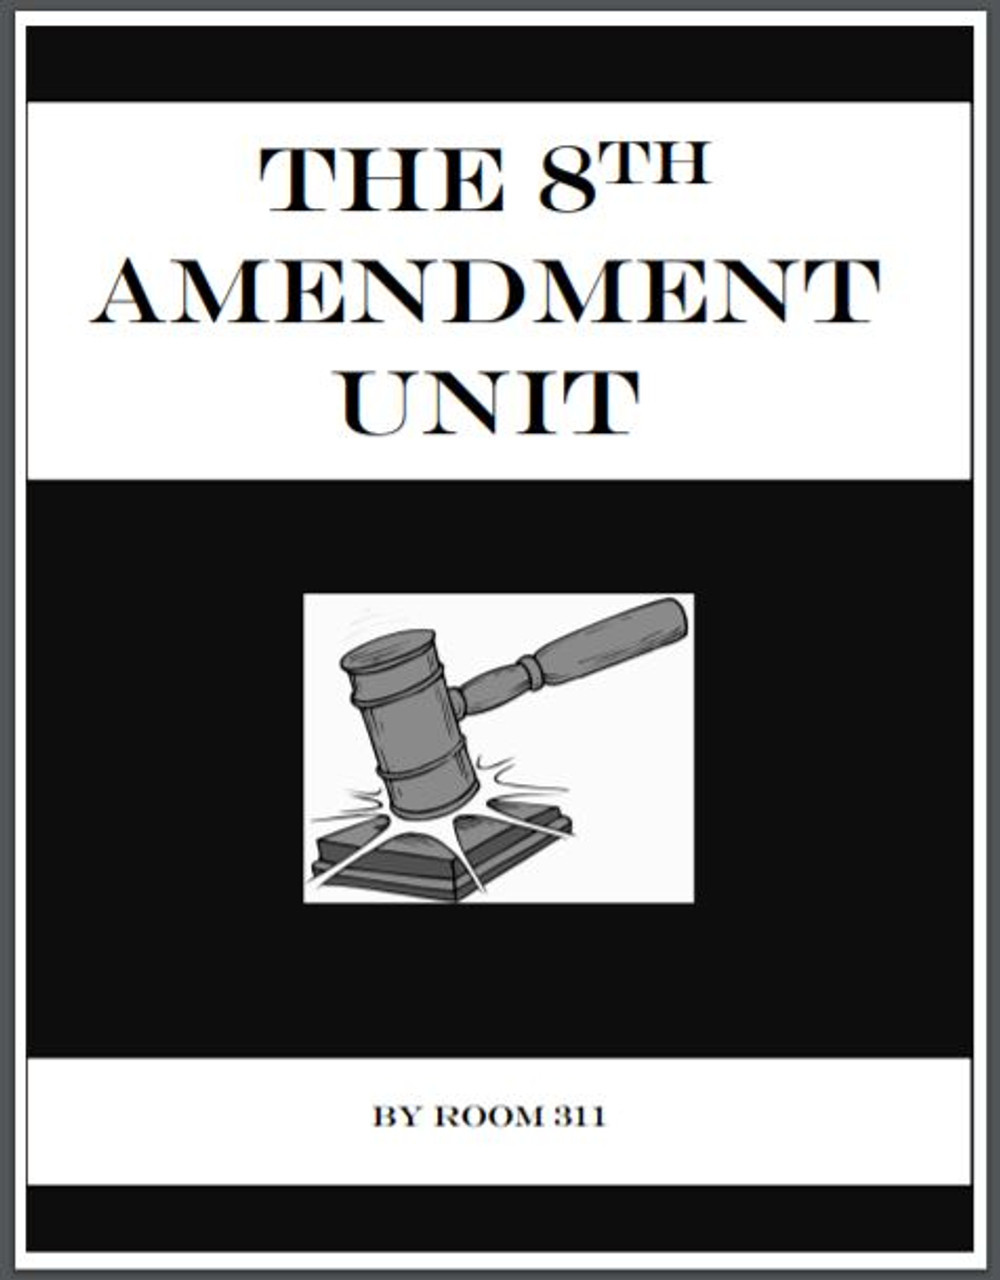 eighth amendment bill of rights